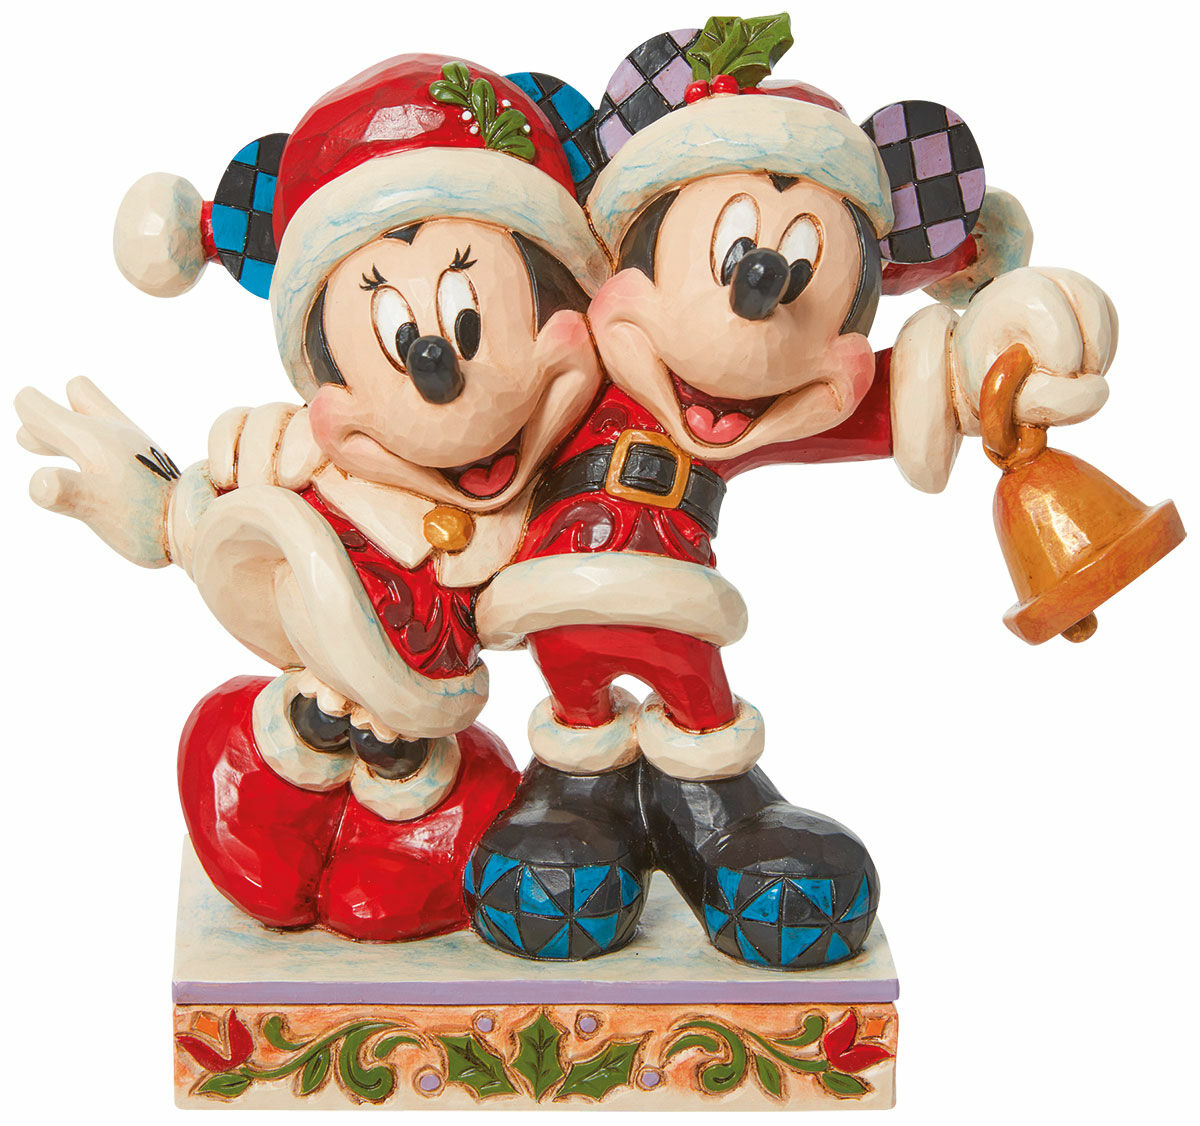 Sculptuur "Minnie en Mickey met bellen", gegoten von Jim Shore